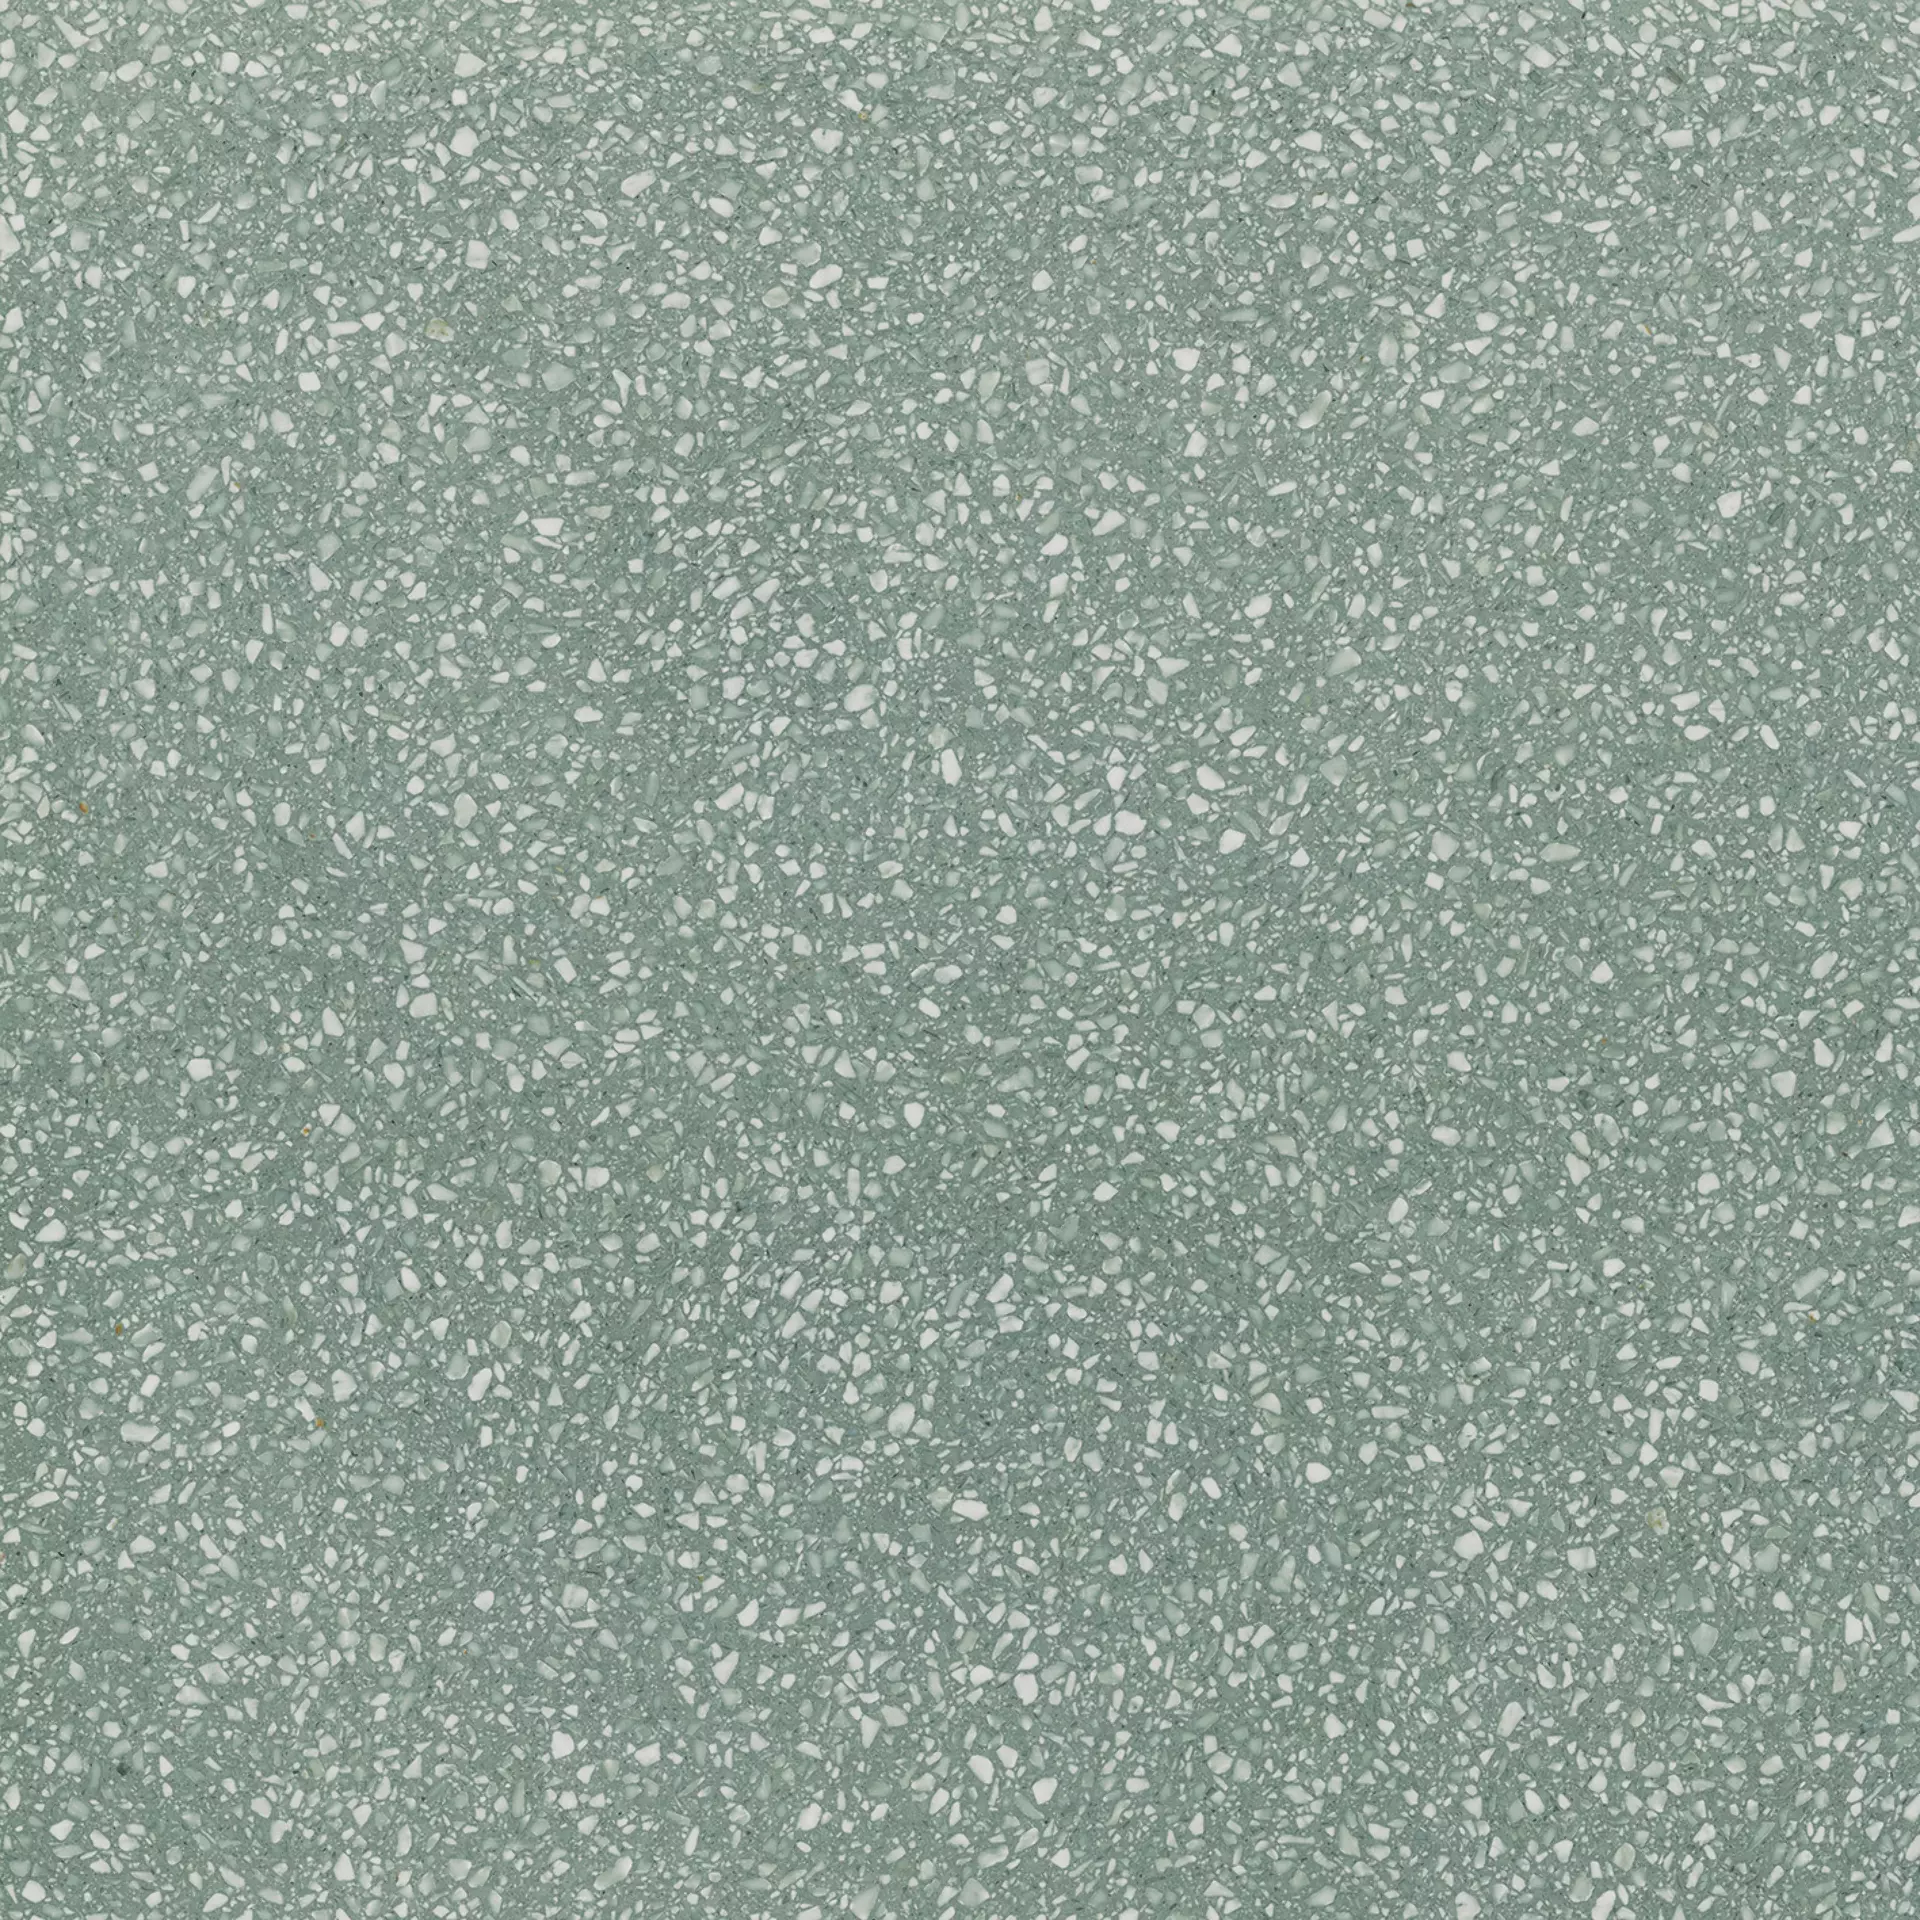 Wandfliese,Bodenfliese Villeroy & Boch Sparks Pearl Grey Matt Pearl Grey 2757-TE60 matt 120x120cm rektifiziert 9mm